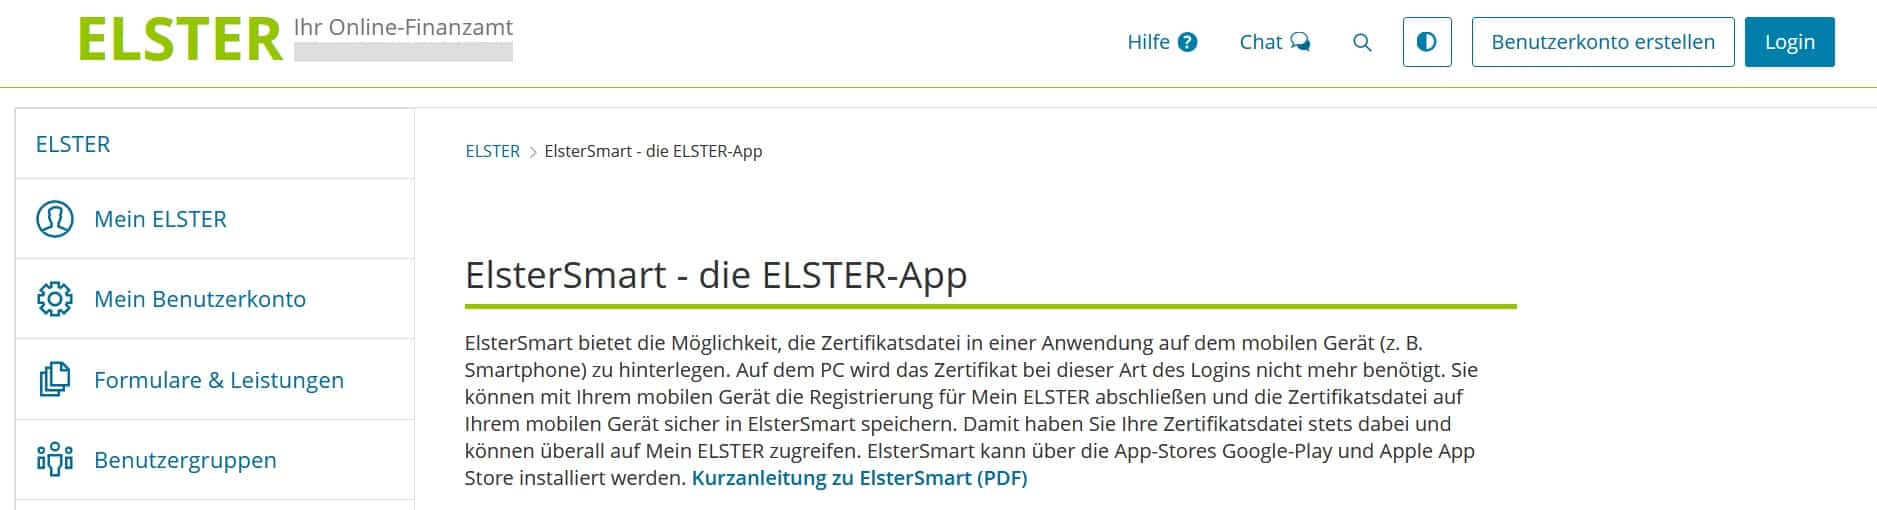 Elster App